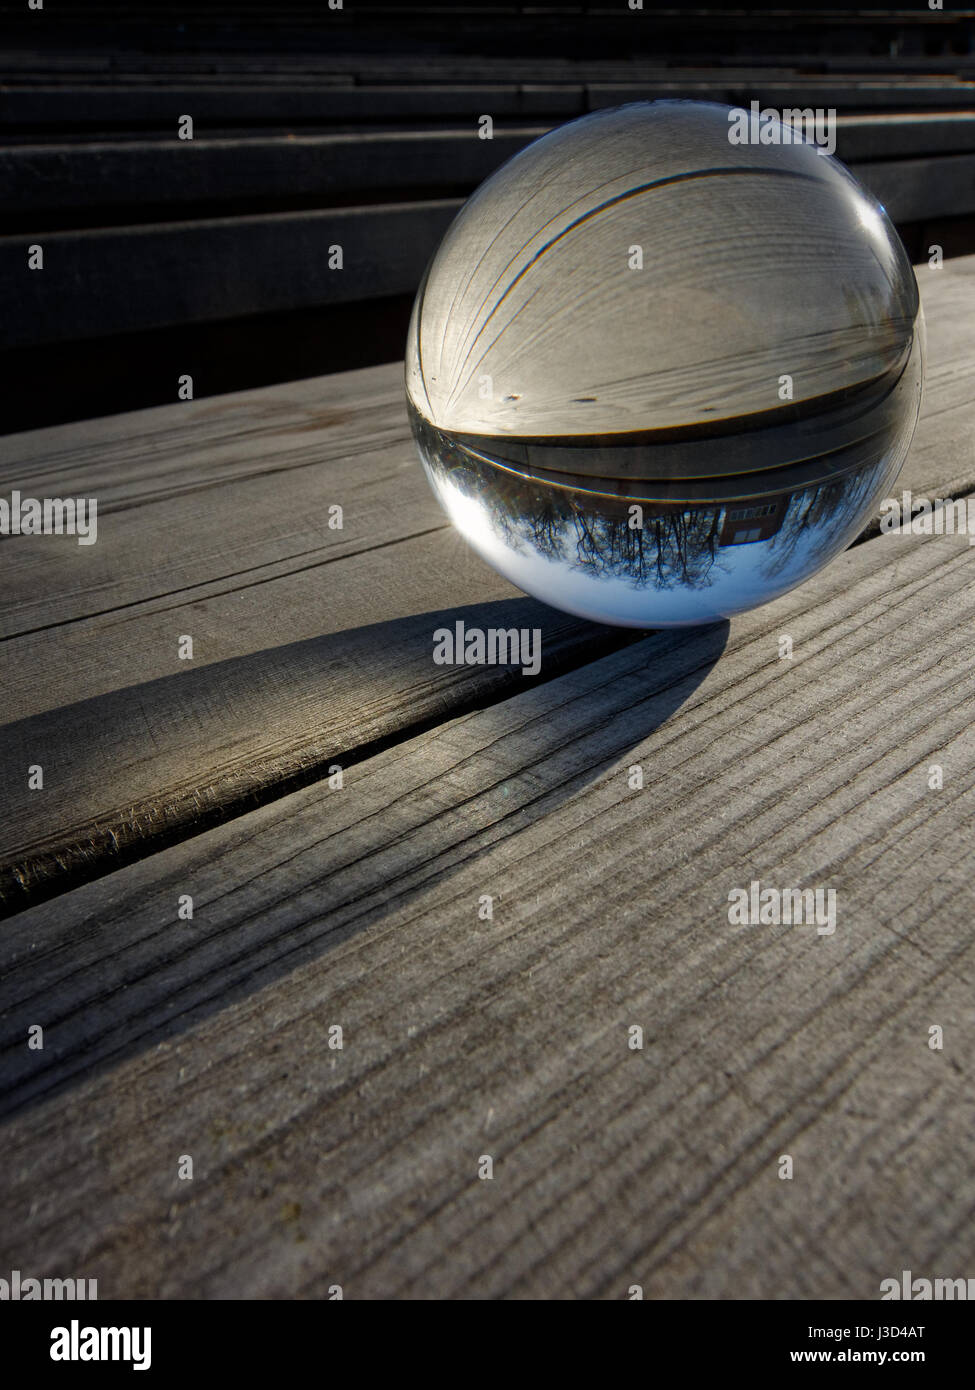 Fondos y texturas: bola de cristal sobre una mesa de madera, parte de un paisaje interior Foto de stock